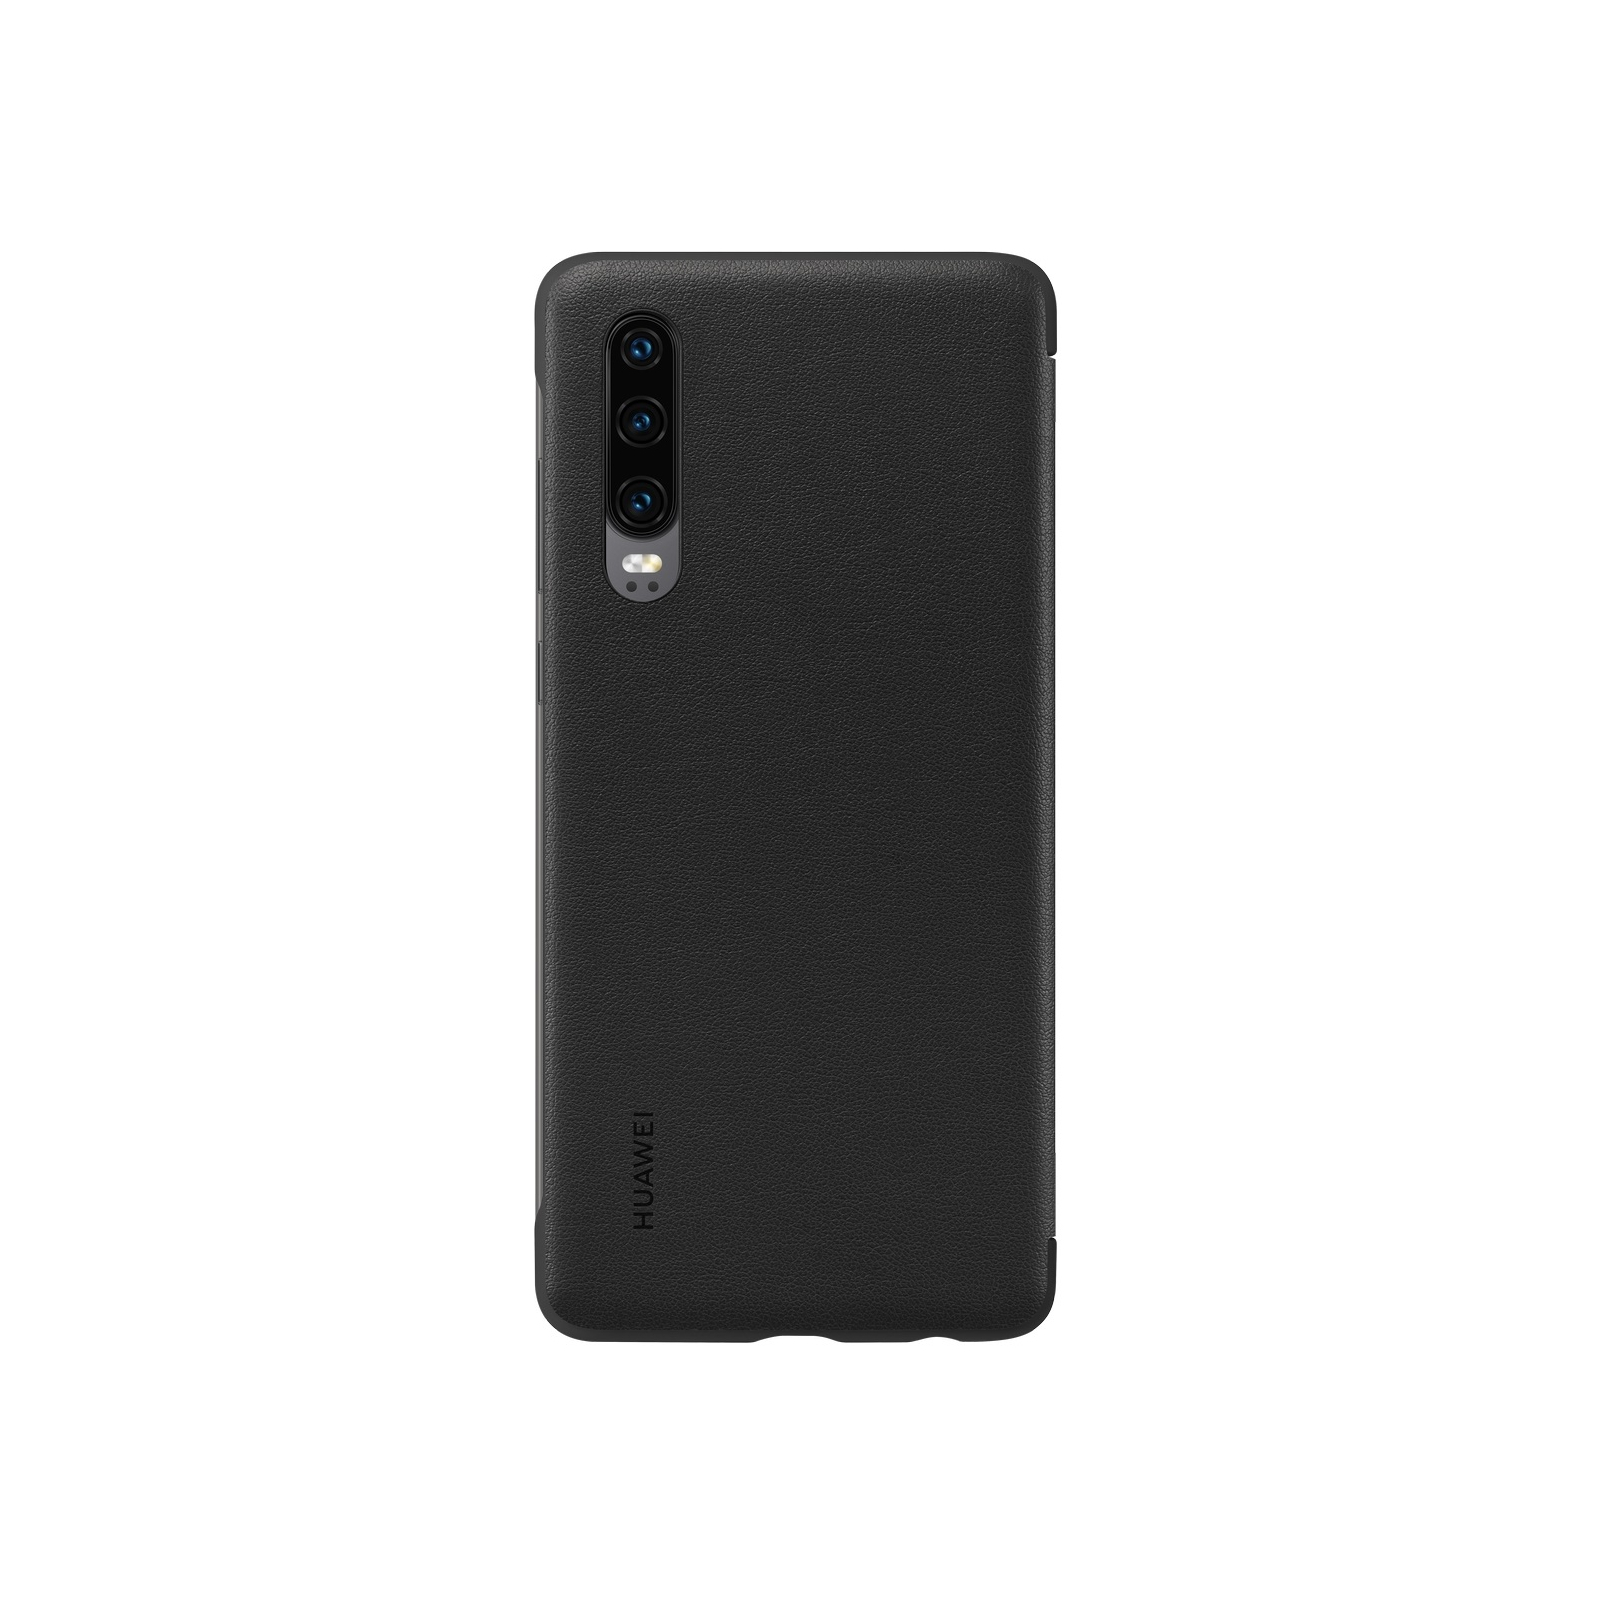 Чехол для мобильного телефона Huawei P30 Smart View Flip Cover Black (51992860) изображение 2